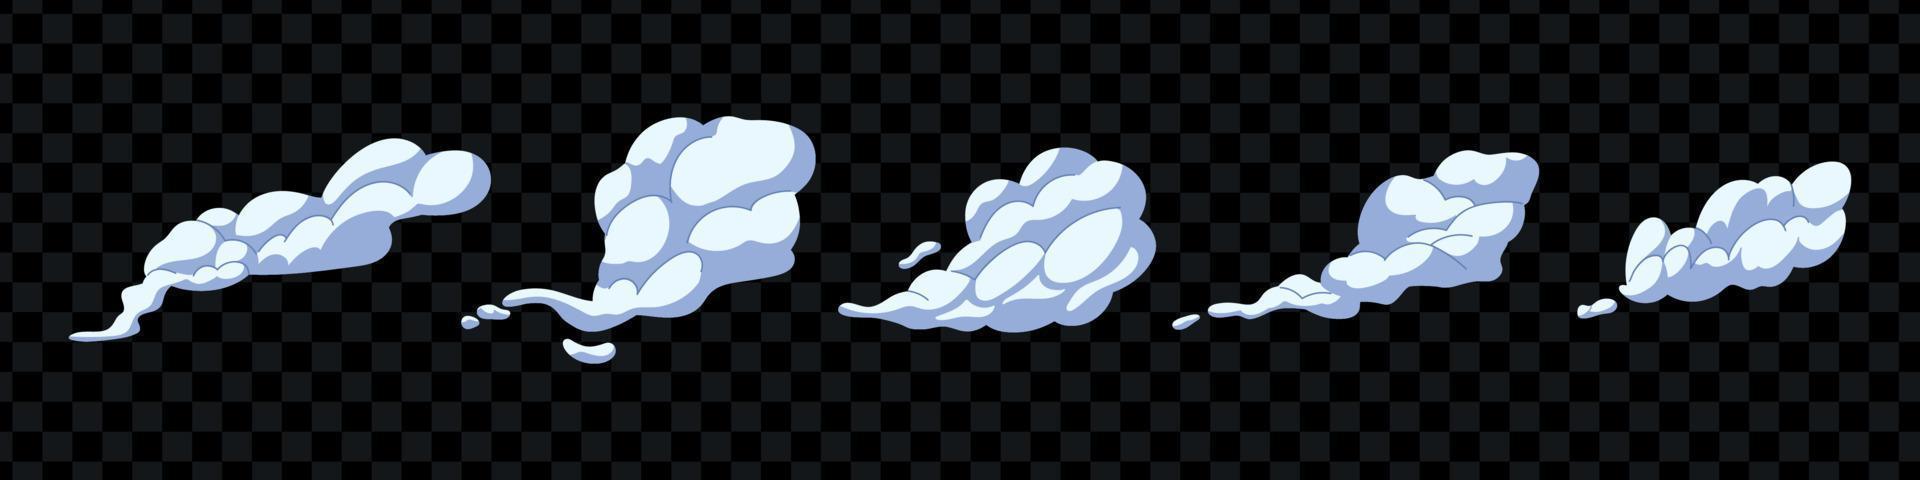 staub, wolken und gaswolken im cartoon-stil. abstrakte rauchige Silhouette. dampfende windsilhouette, rauchexplosion, comic-wolkensammlung. vektorillustration isoliert vektor